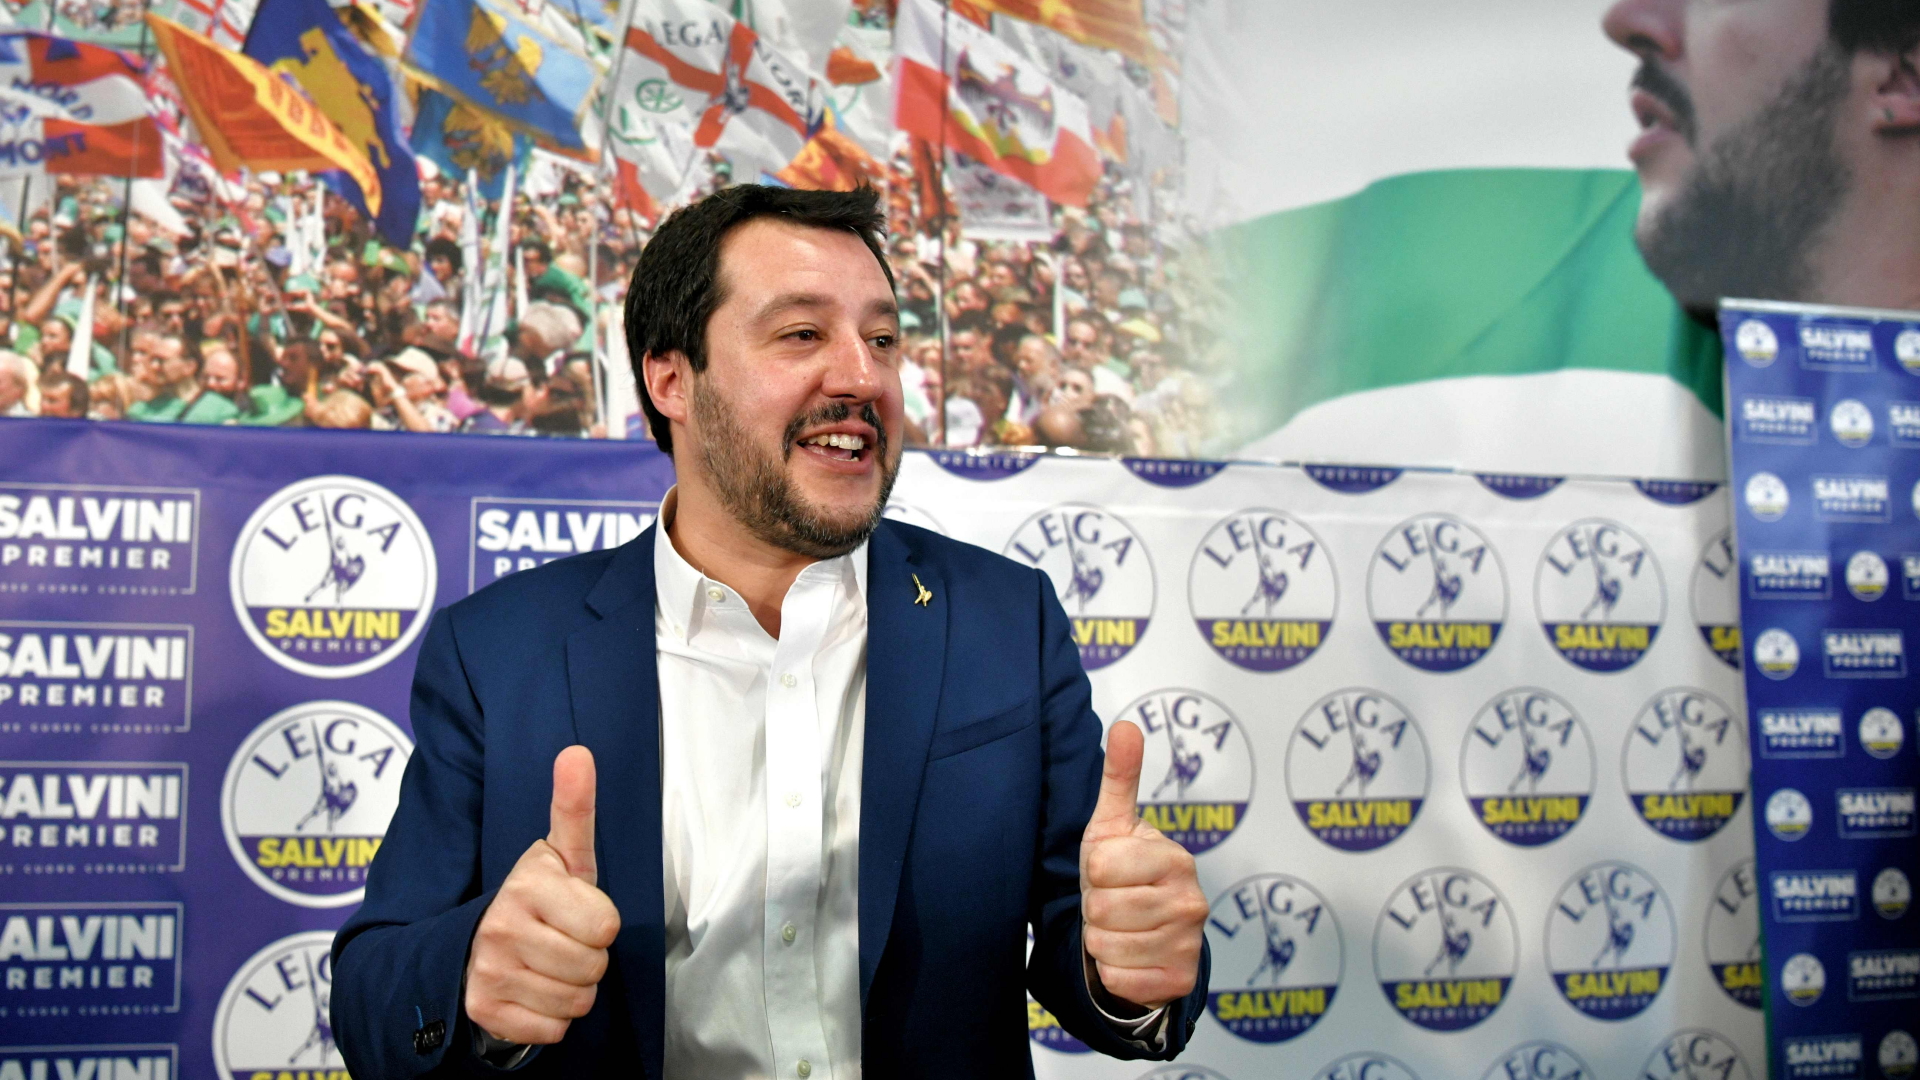 Daumen hoch: Matteo Salvini von der Lega Nord nach der Wahl. | AFP